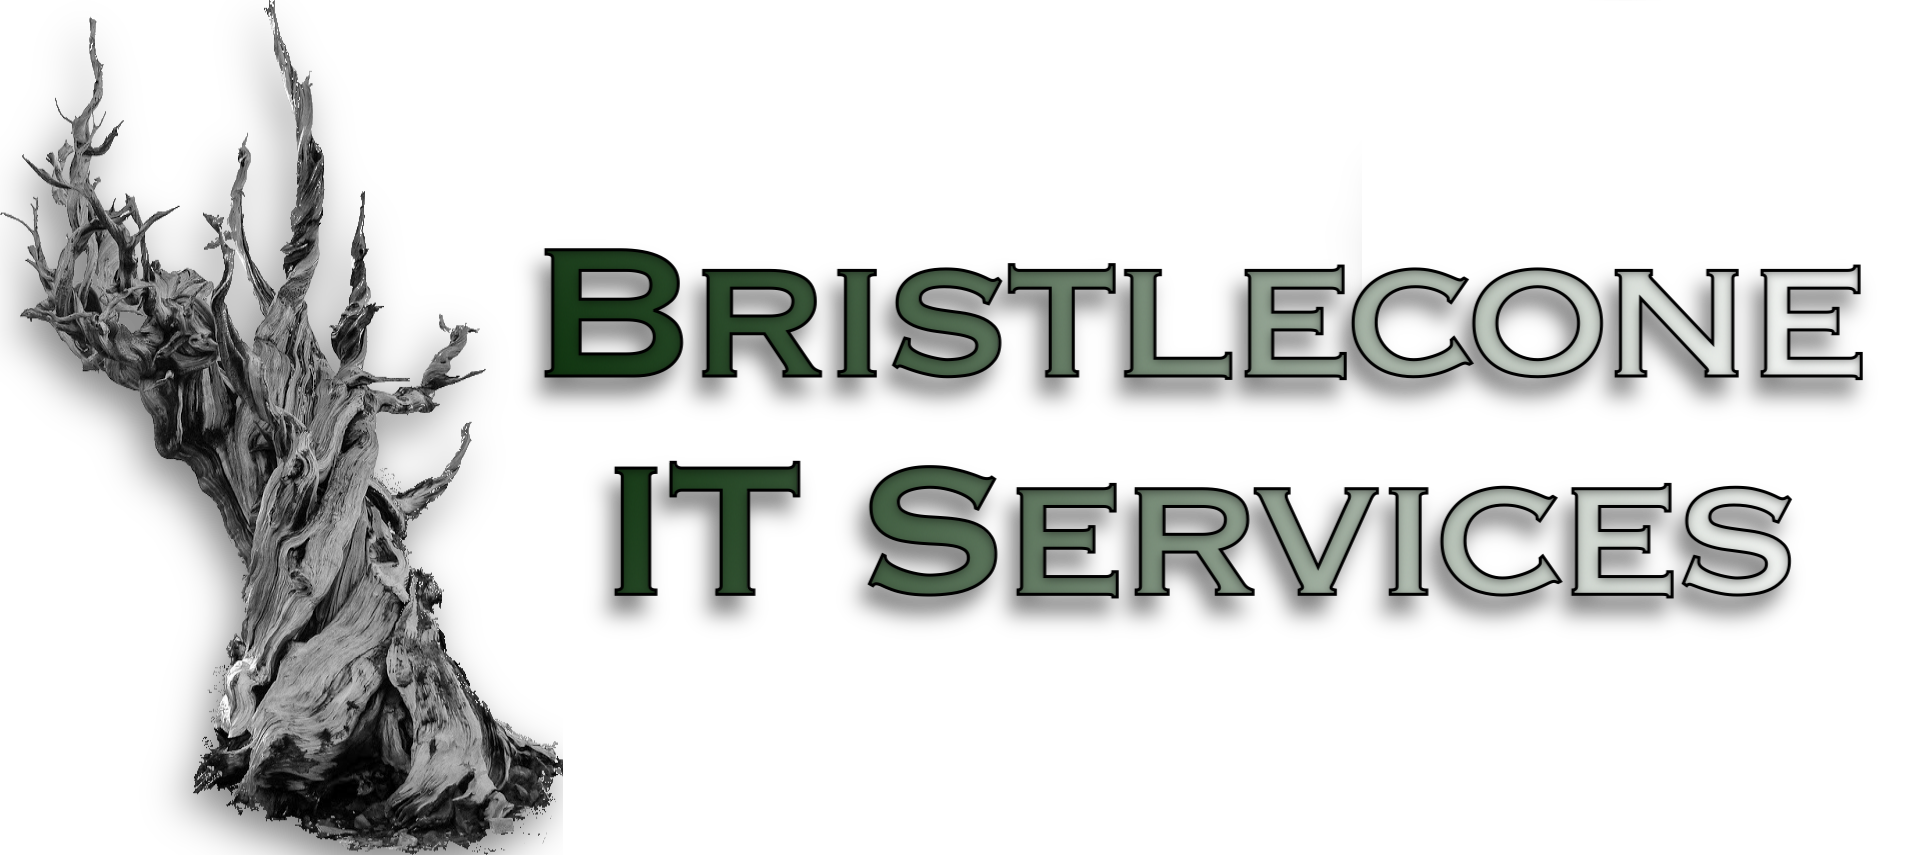 Bristlecone IT Services